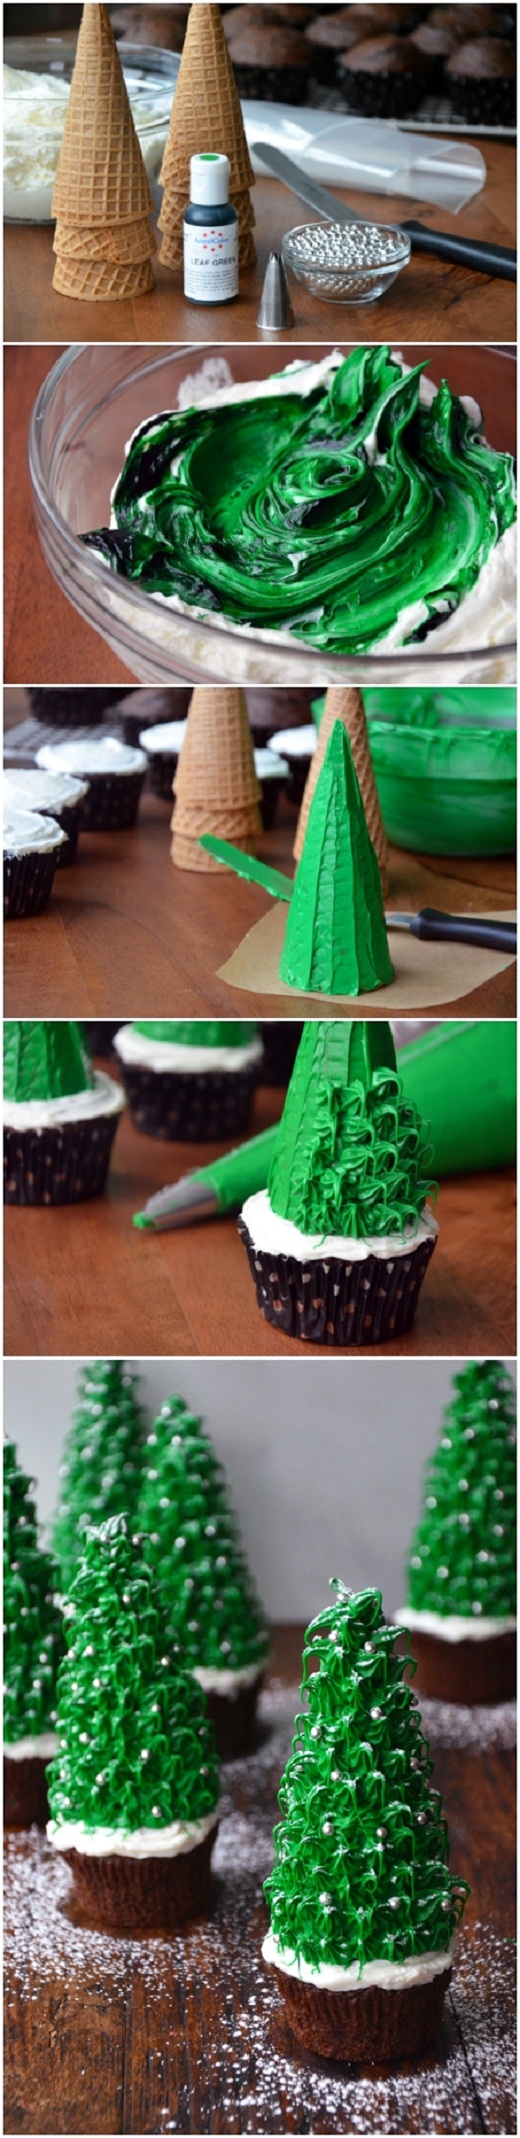 Christmas-tree-cupcakes